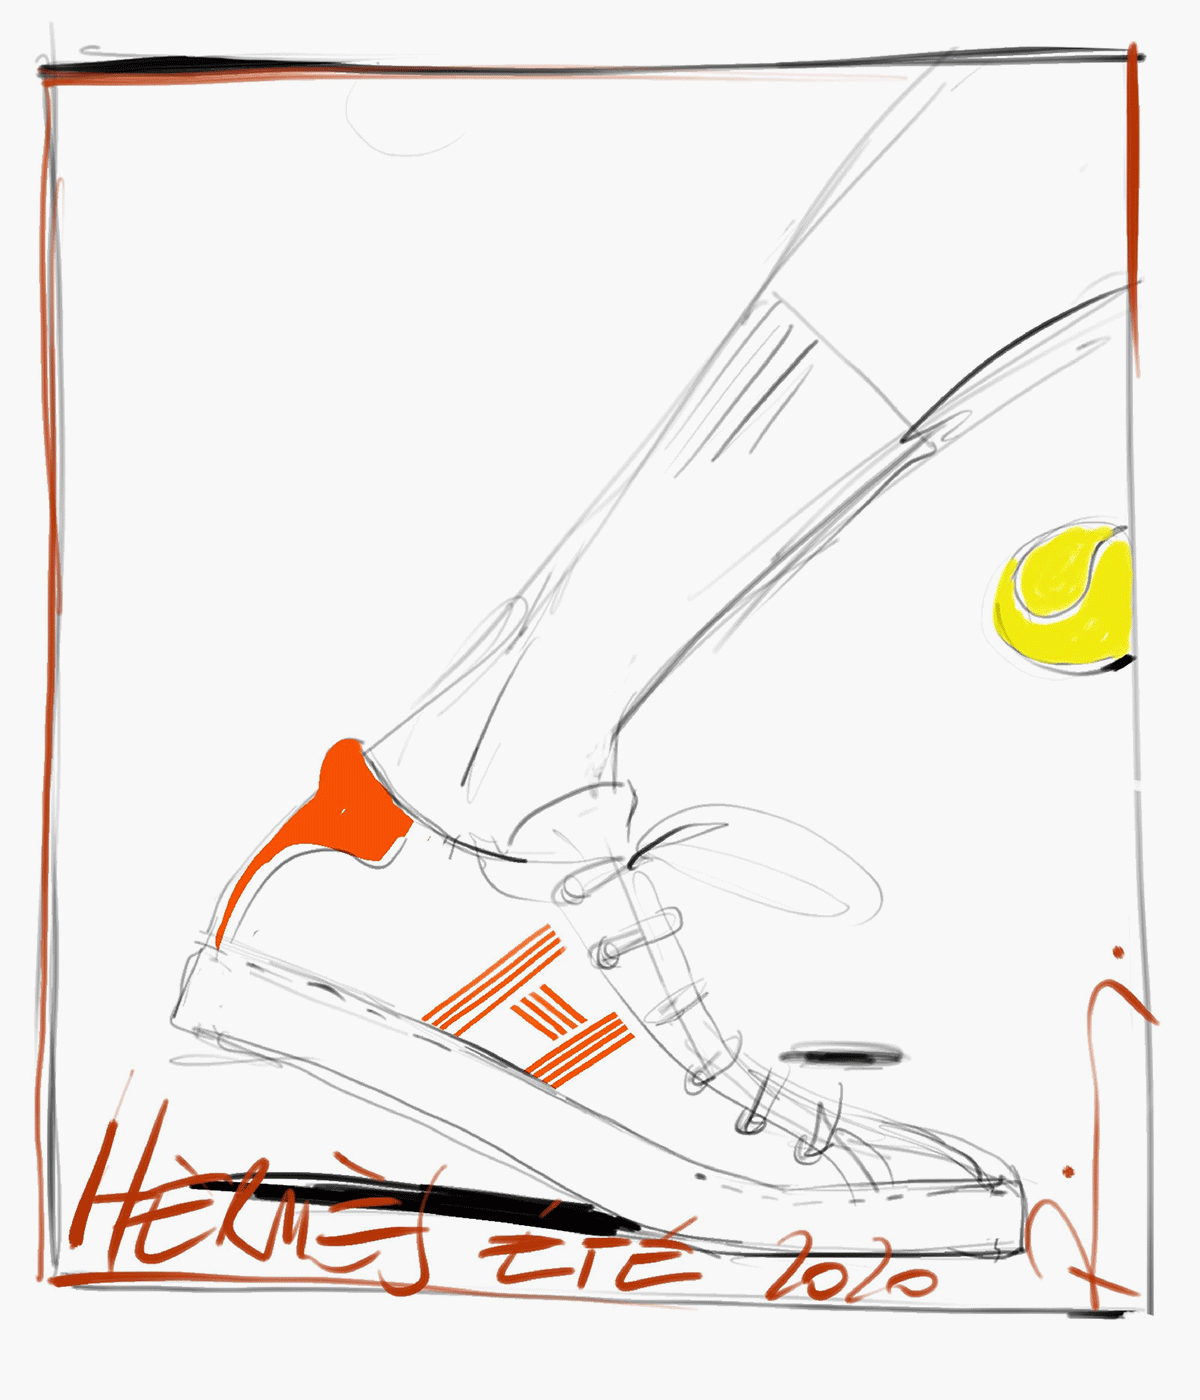  Hermès Avantage sneaker sketch by Pierre Hardy